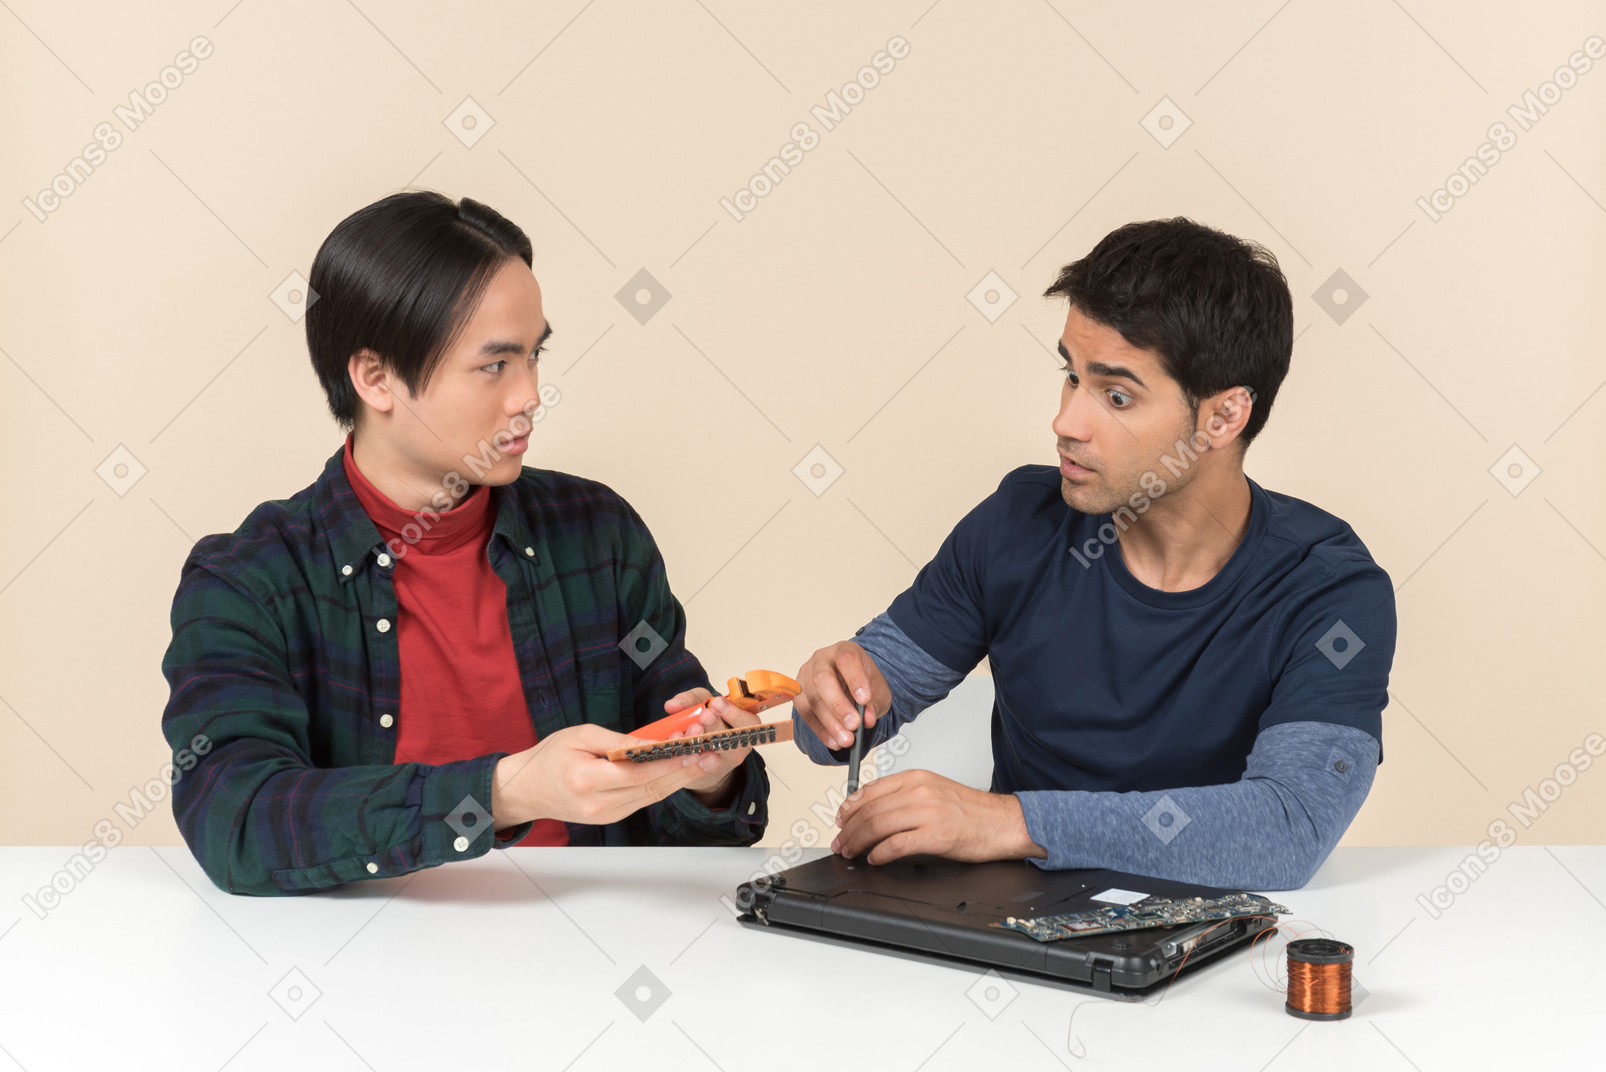 Dos jóvenes geeks sentados a la mesa y teniendo problemas para arreglar la laptop